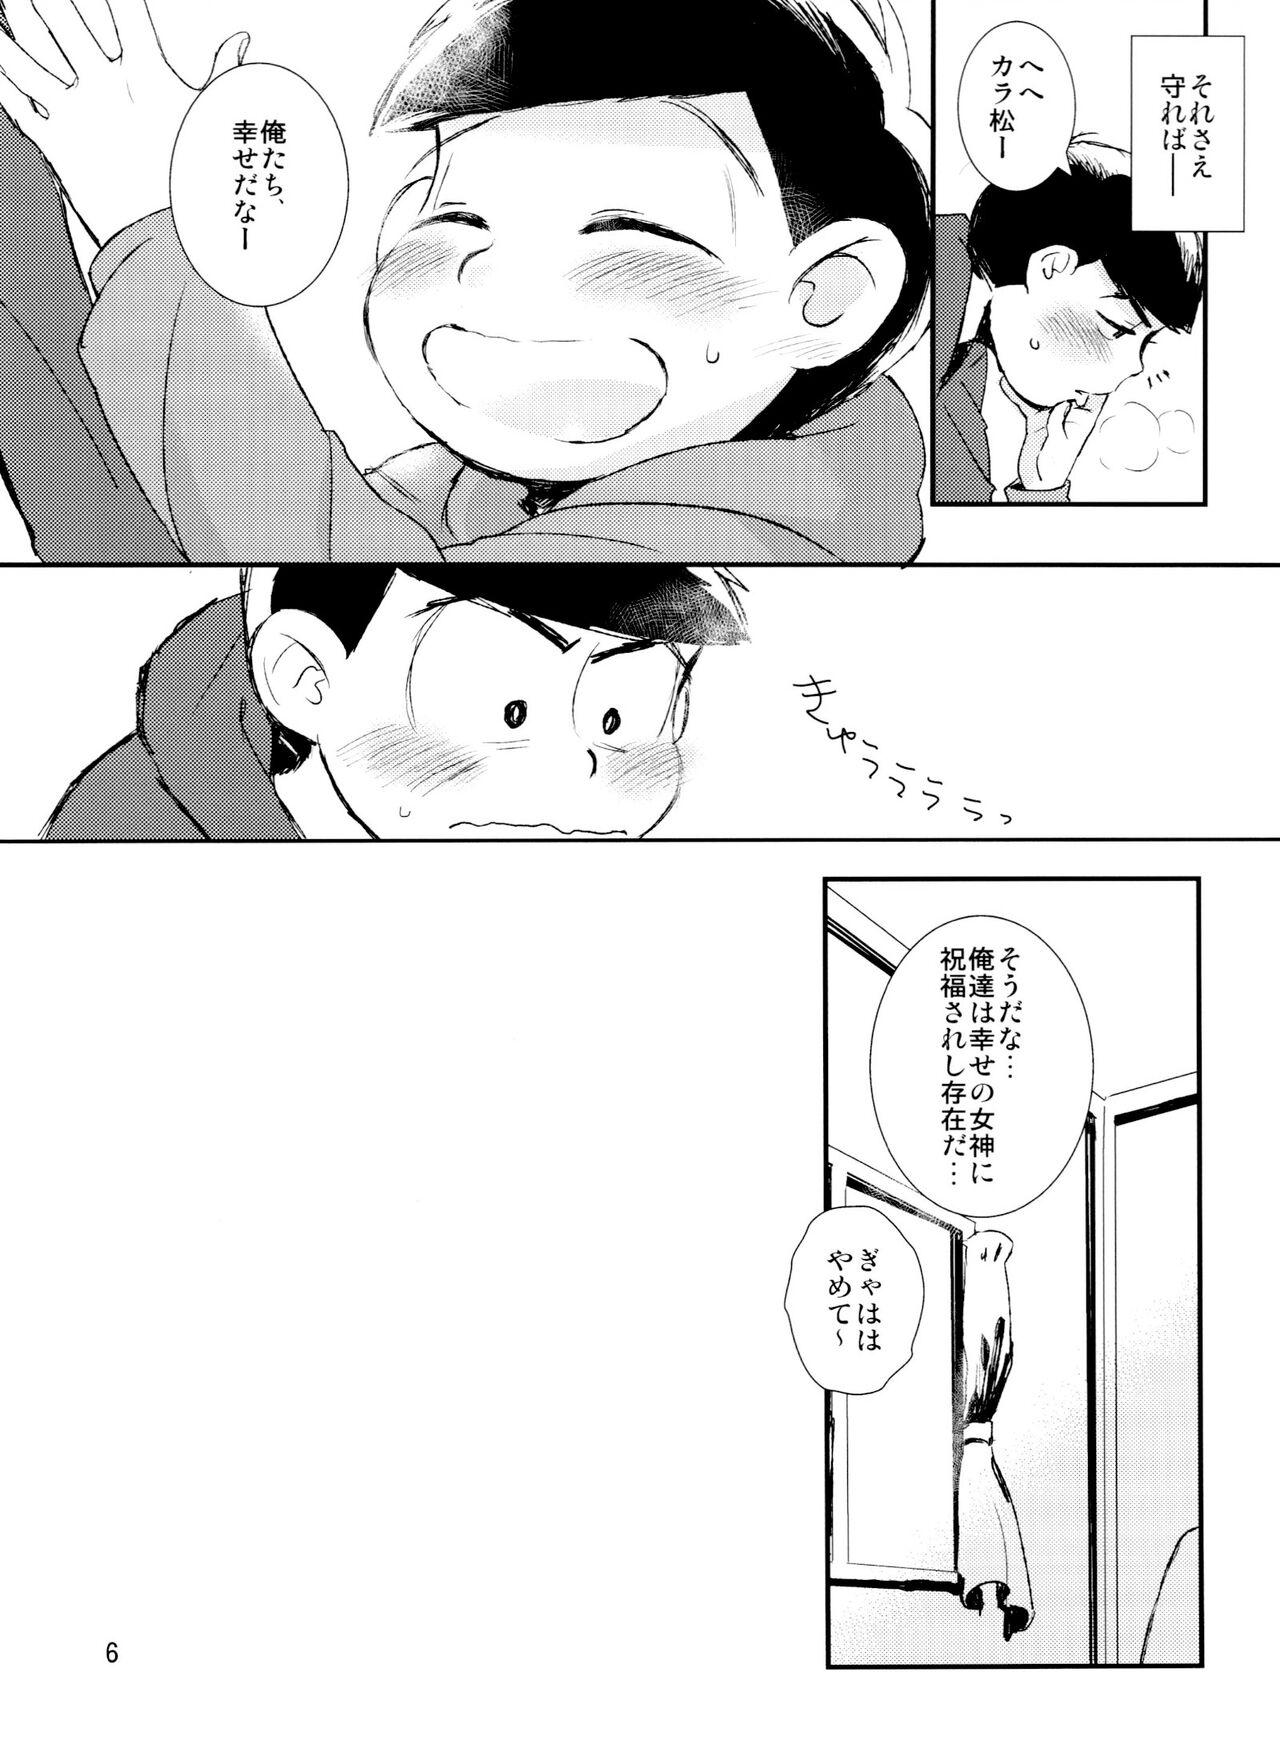 Smoking Kimigasukida yo hoshi itte itte - Osomatsu san Aunty - Page 6